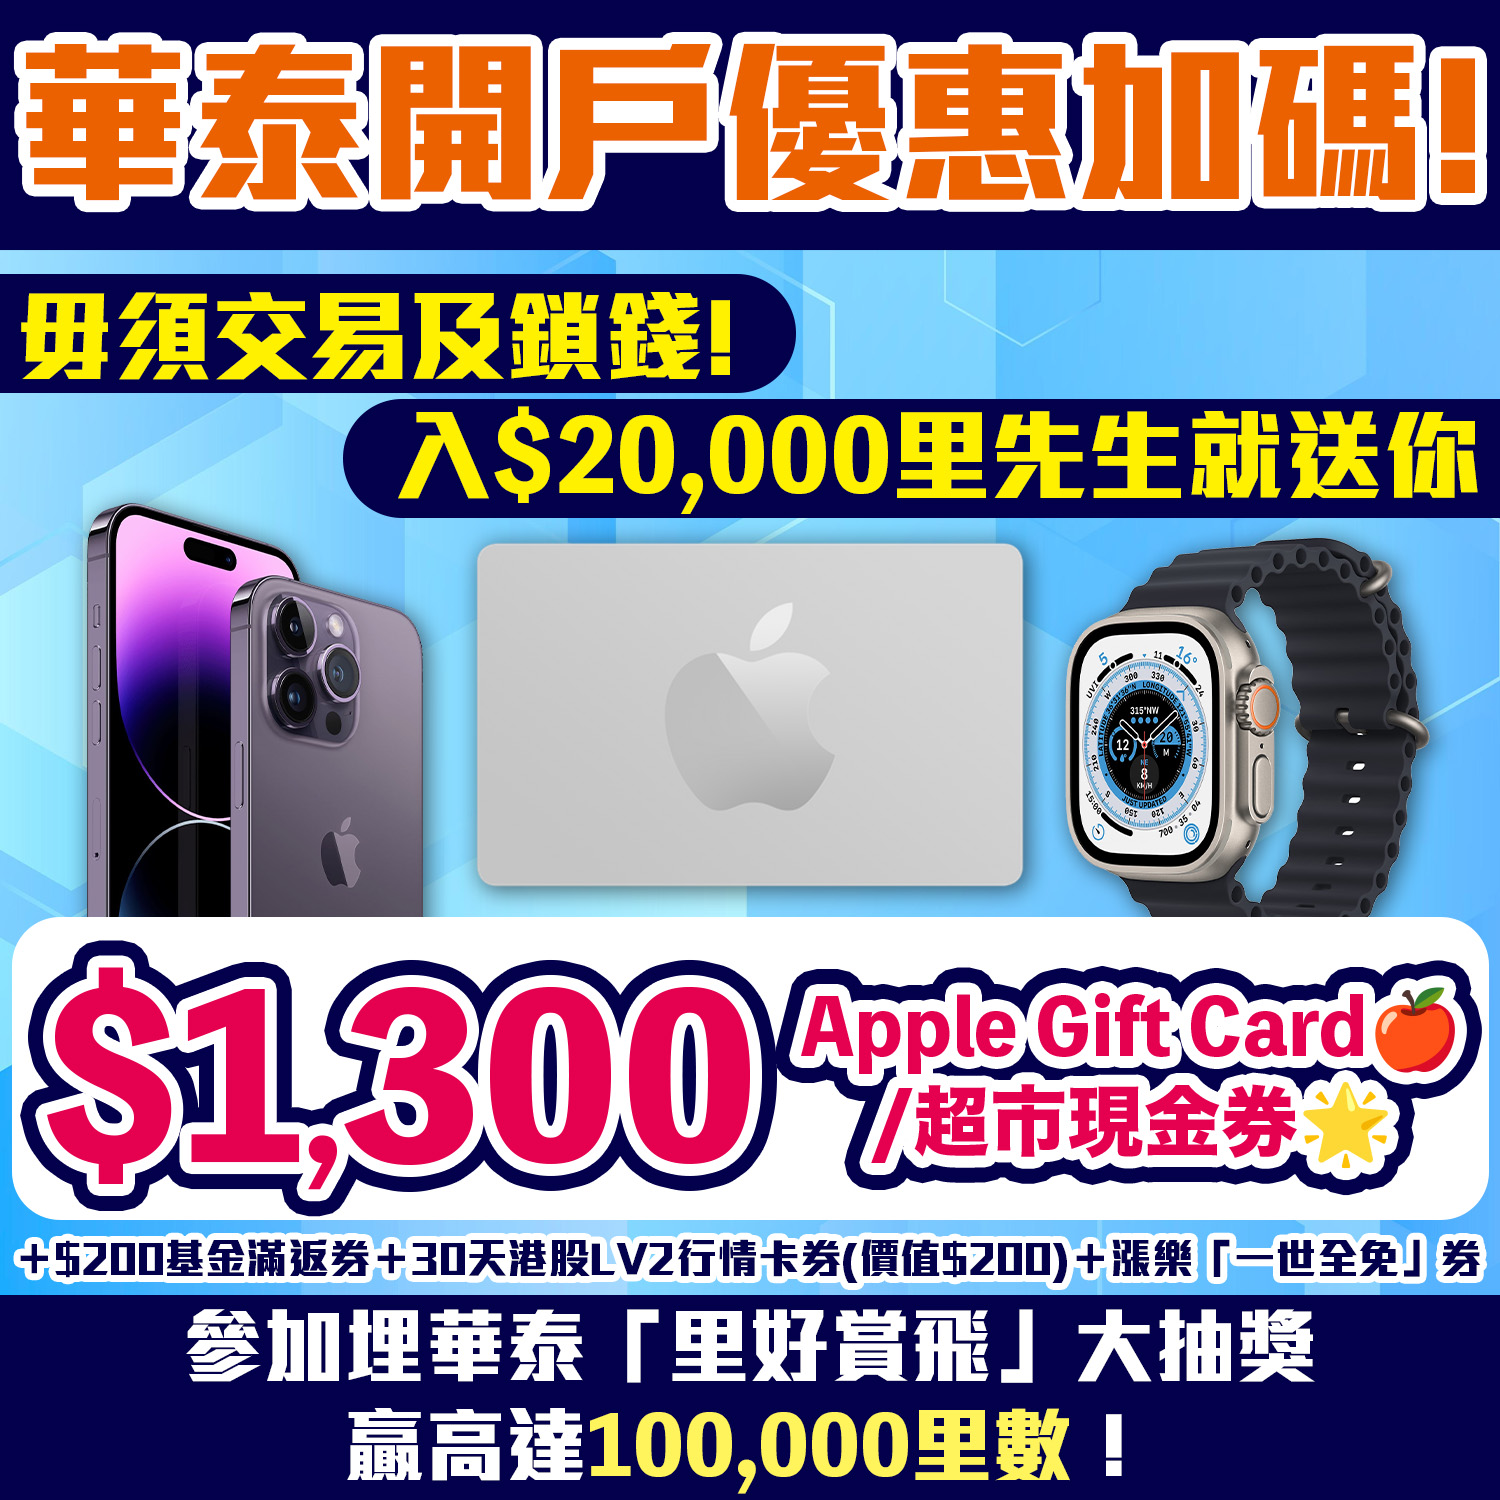 華泰開戶加碼賺$1,300 Apple Gift Card/超市現金券，合共高達HK$1,700獎賞！毋須交易及鎖錢！開戶並首次入$20,000食迎新！